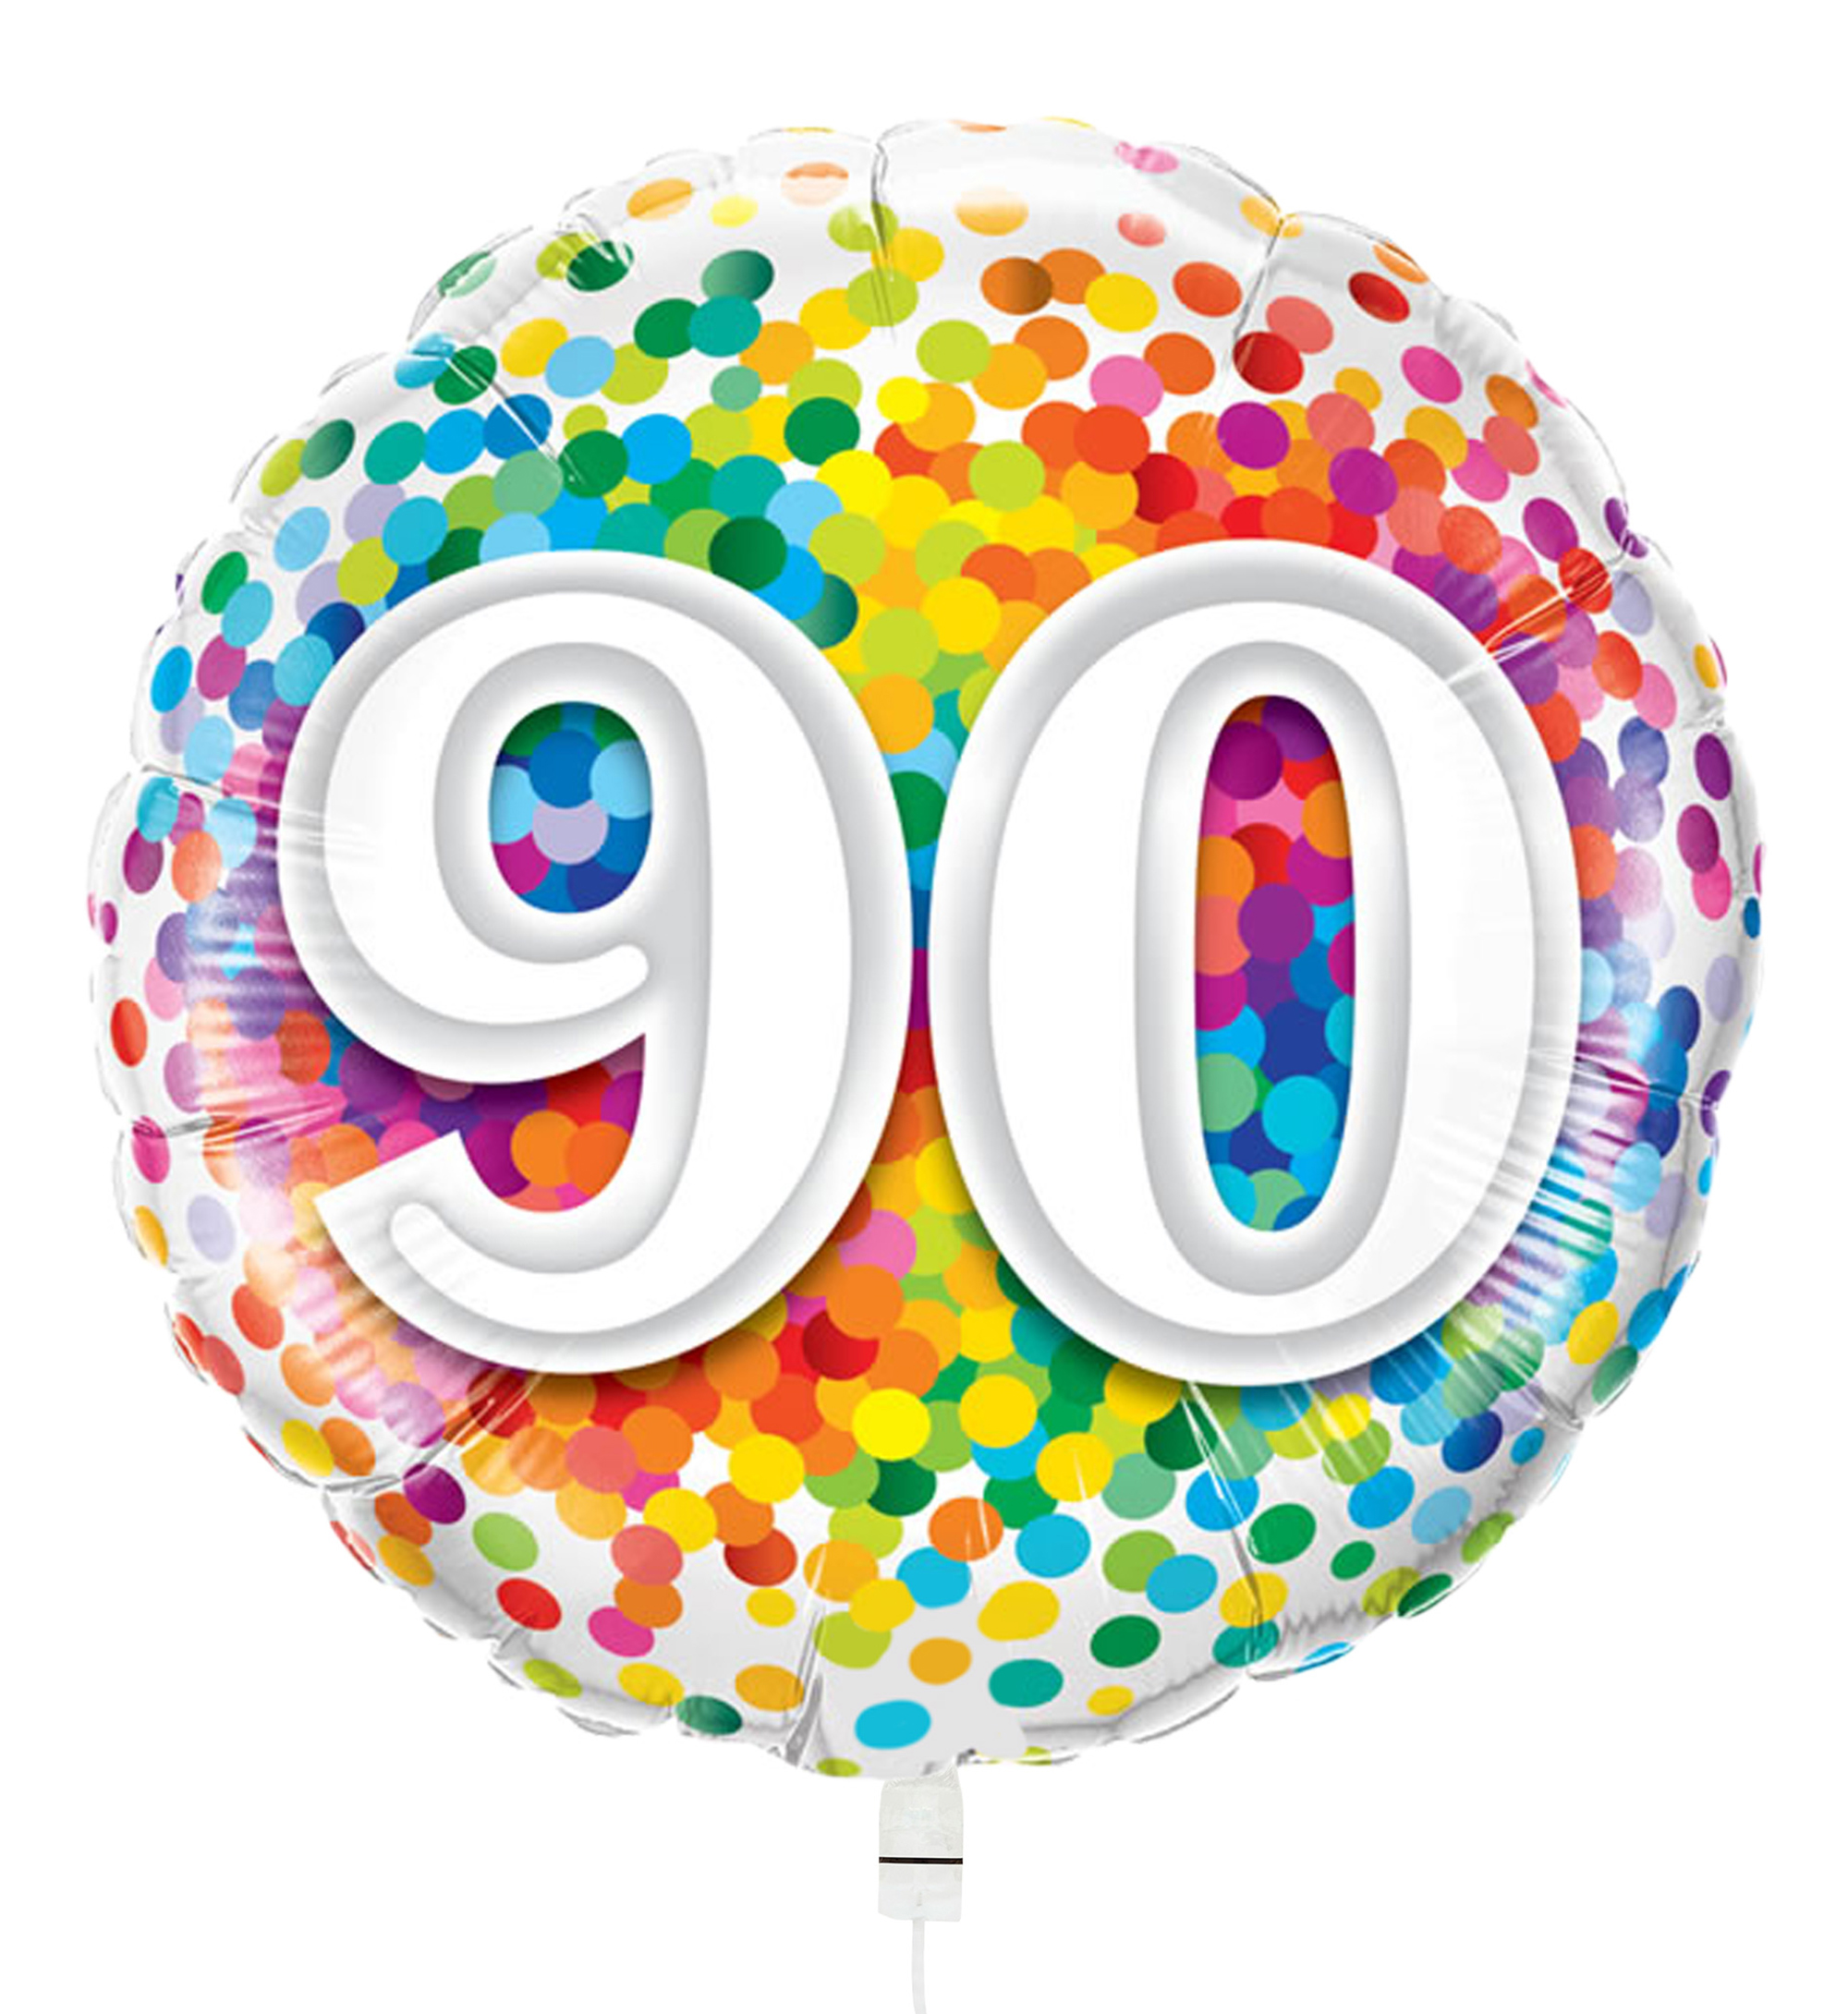 Hertog Cerebrum module Ballon Verjaardag Rainbow Confetti 90 | Hallmark